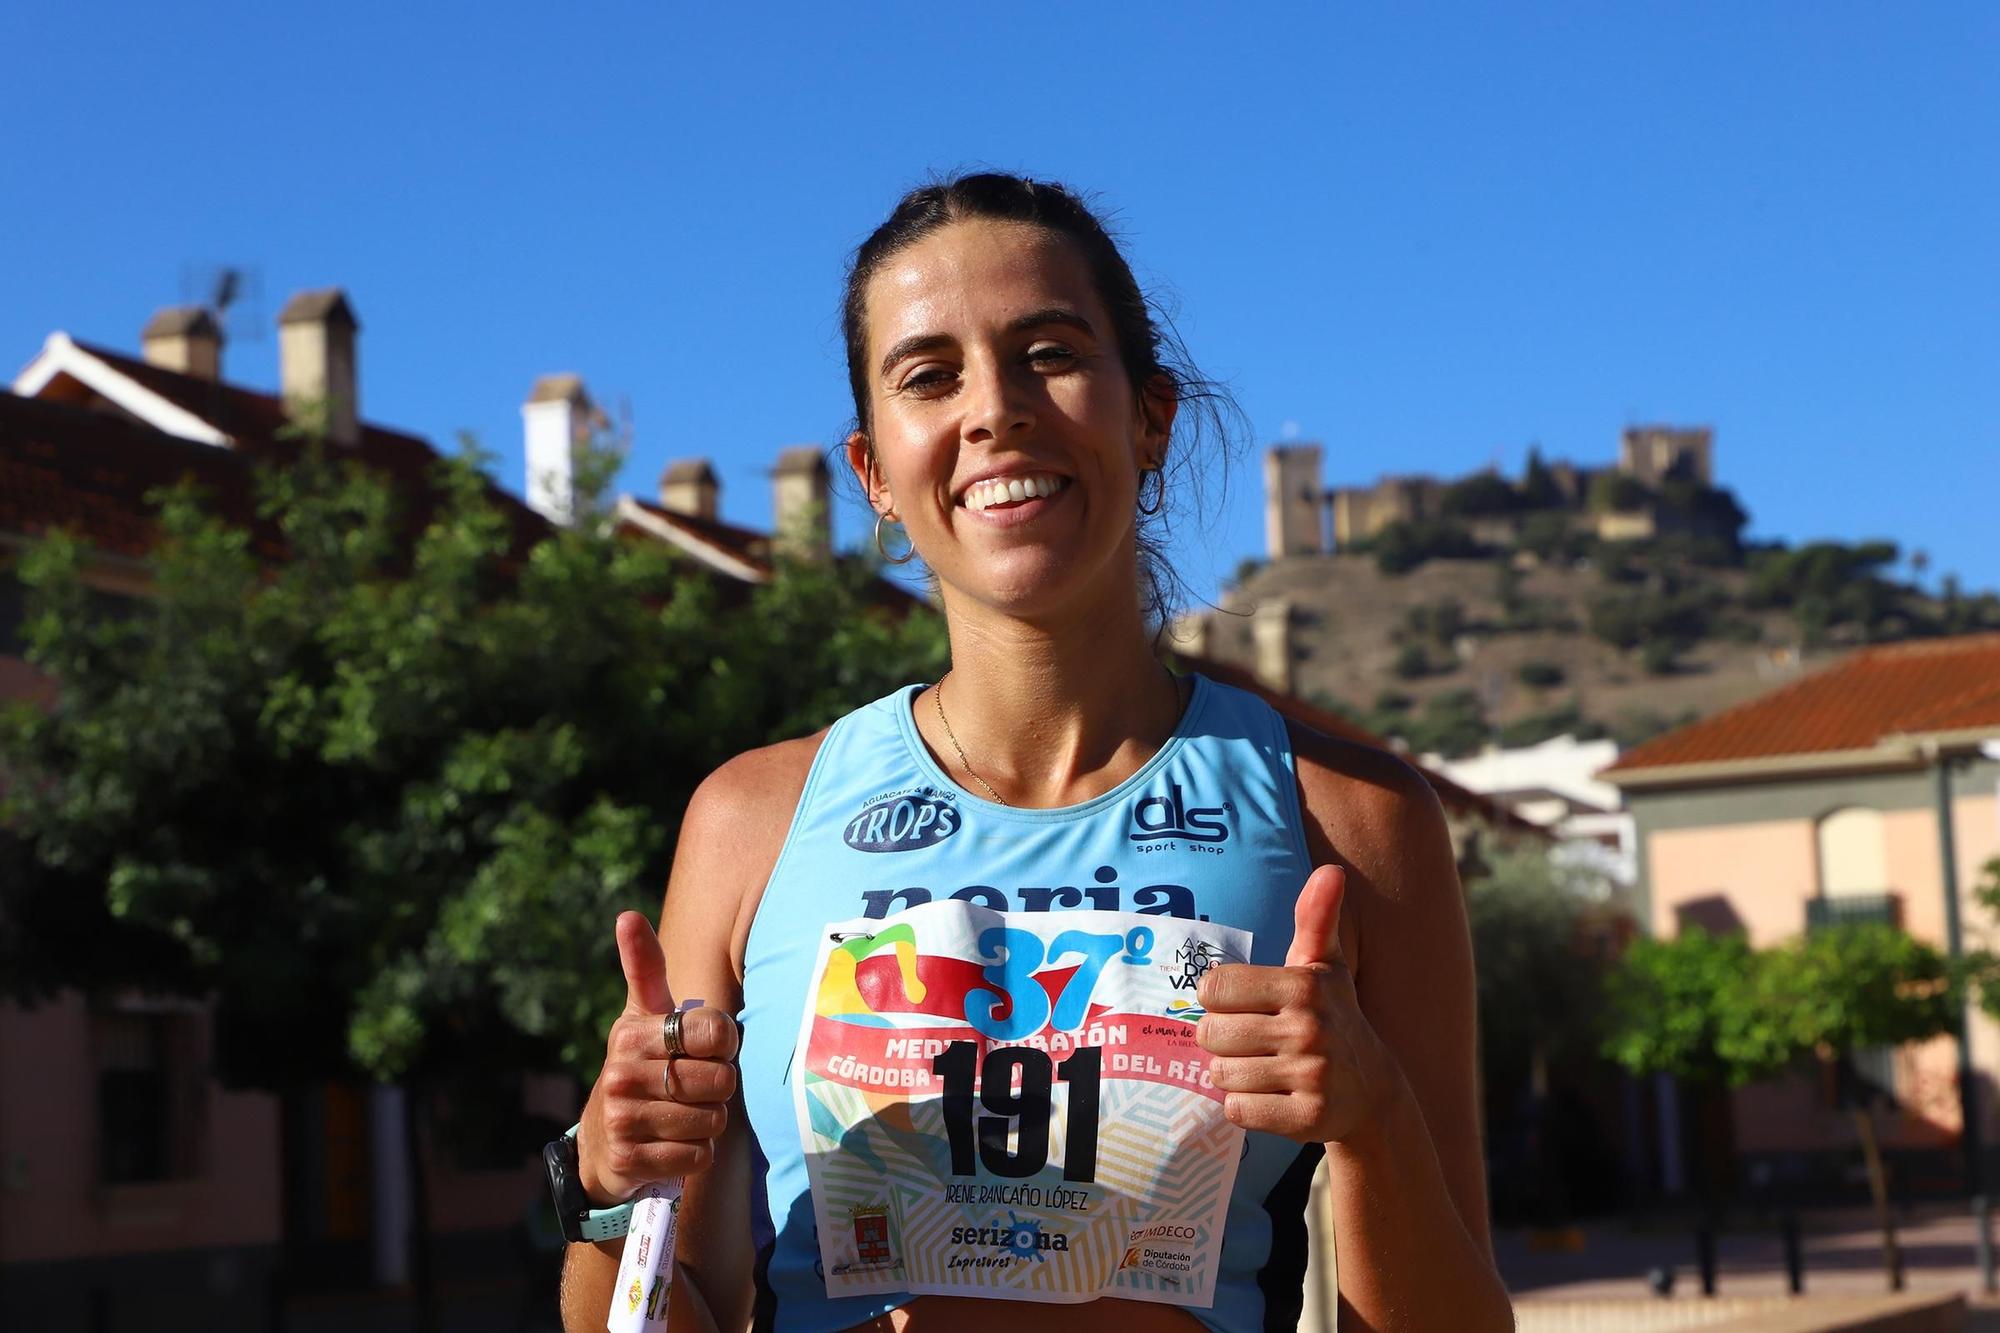 La Media Maratón Córdoba - Almodóvar del Río, en imágenes